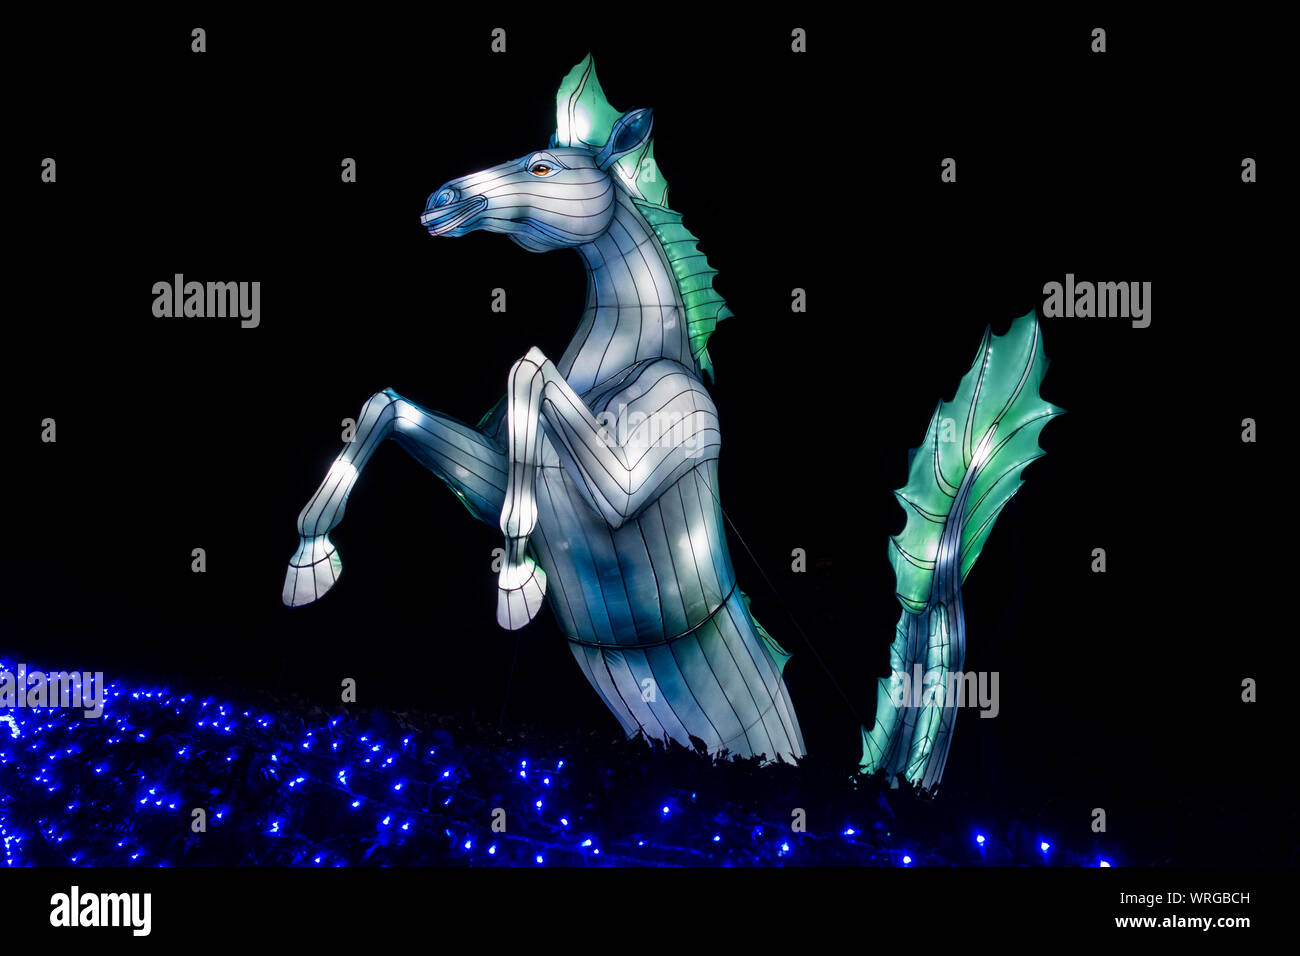 Kelpie, mythique une forme changeante de l'esprit d'eau, une partie de la Chine des lanternes géantes, Mythes et Légendes afficher au Zoo d'Edimbourg, Ecosse, Royaume-Uni Banque D'Images